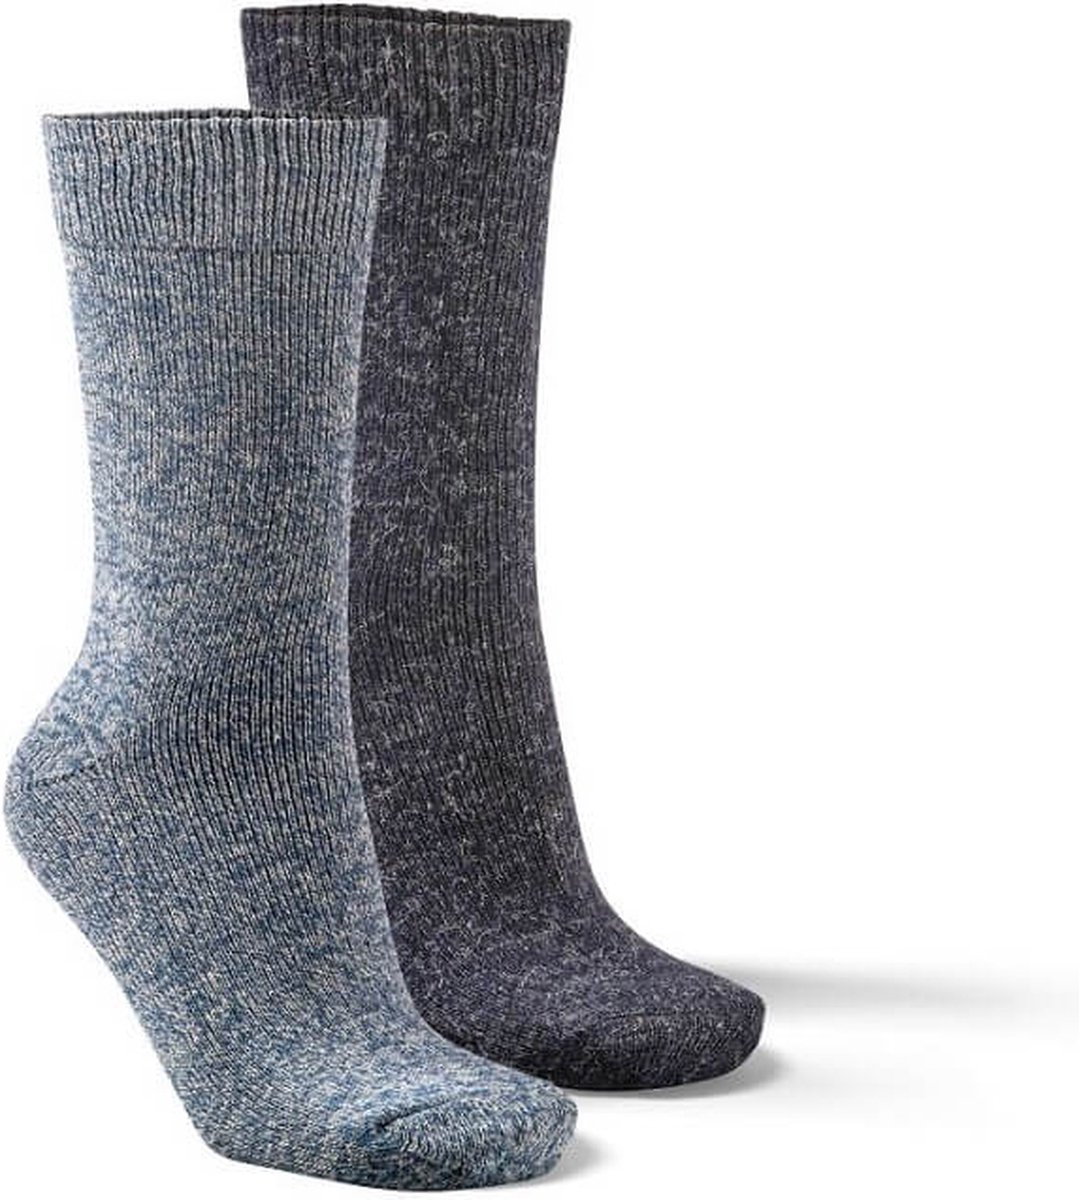 Fellhof Alpaca sokken maat 35-38 – blauw/donkerblauw – alpacawol – wollen sokken – warme sokken temperatuurregulerend – vochtregulerend – geurloos – ademend – comfortabel – zacht